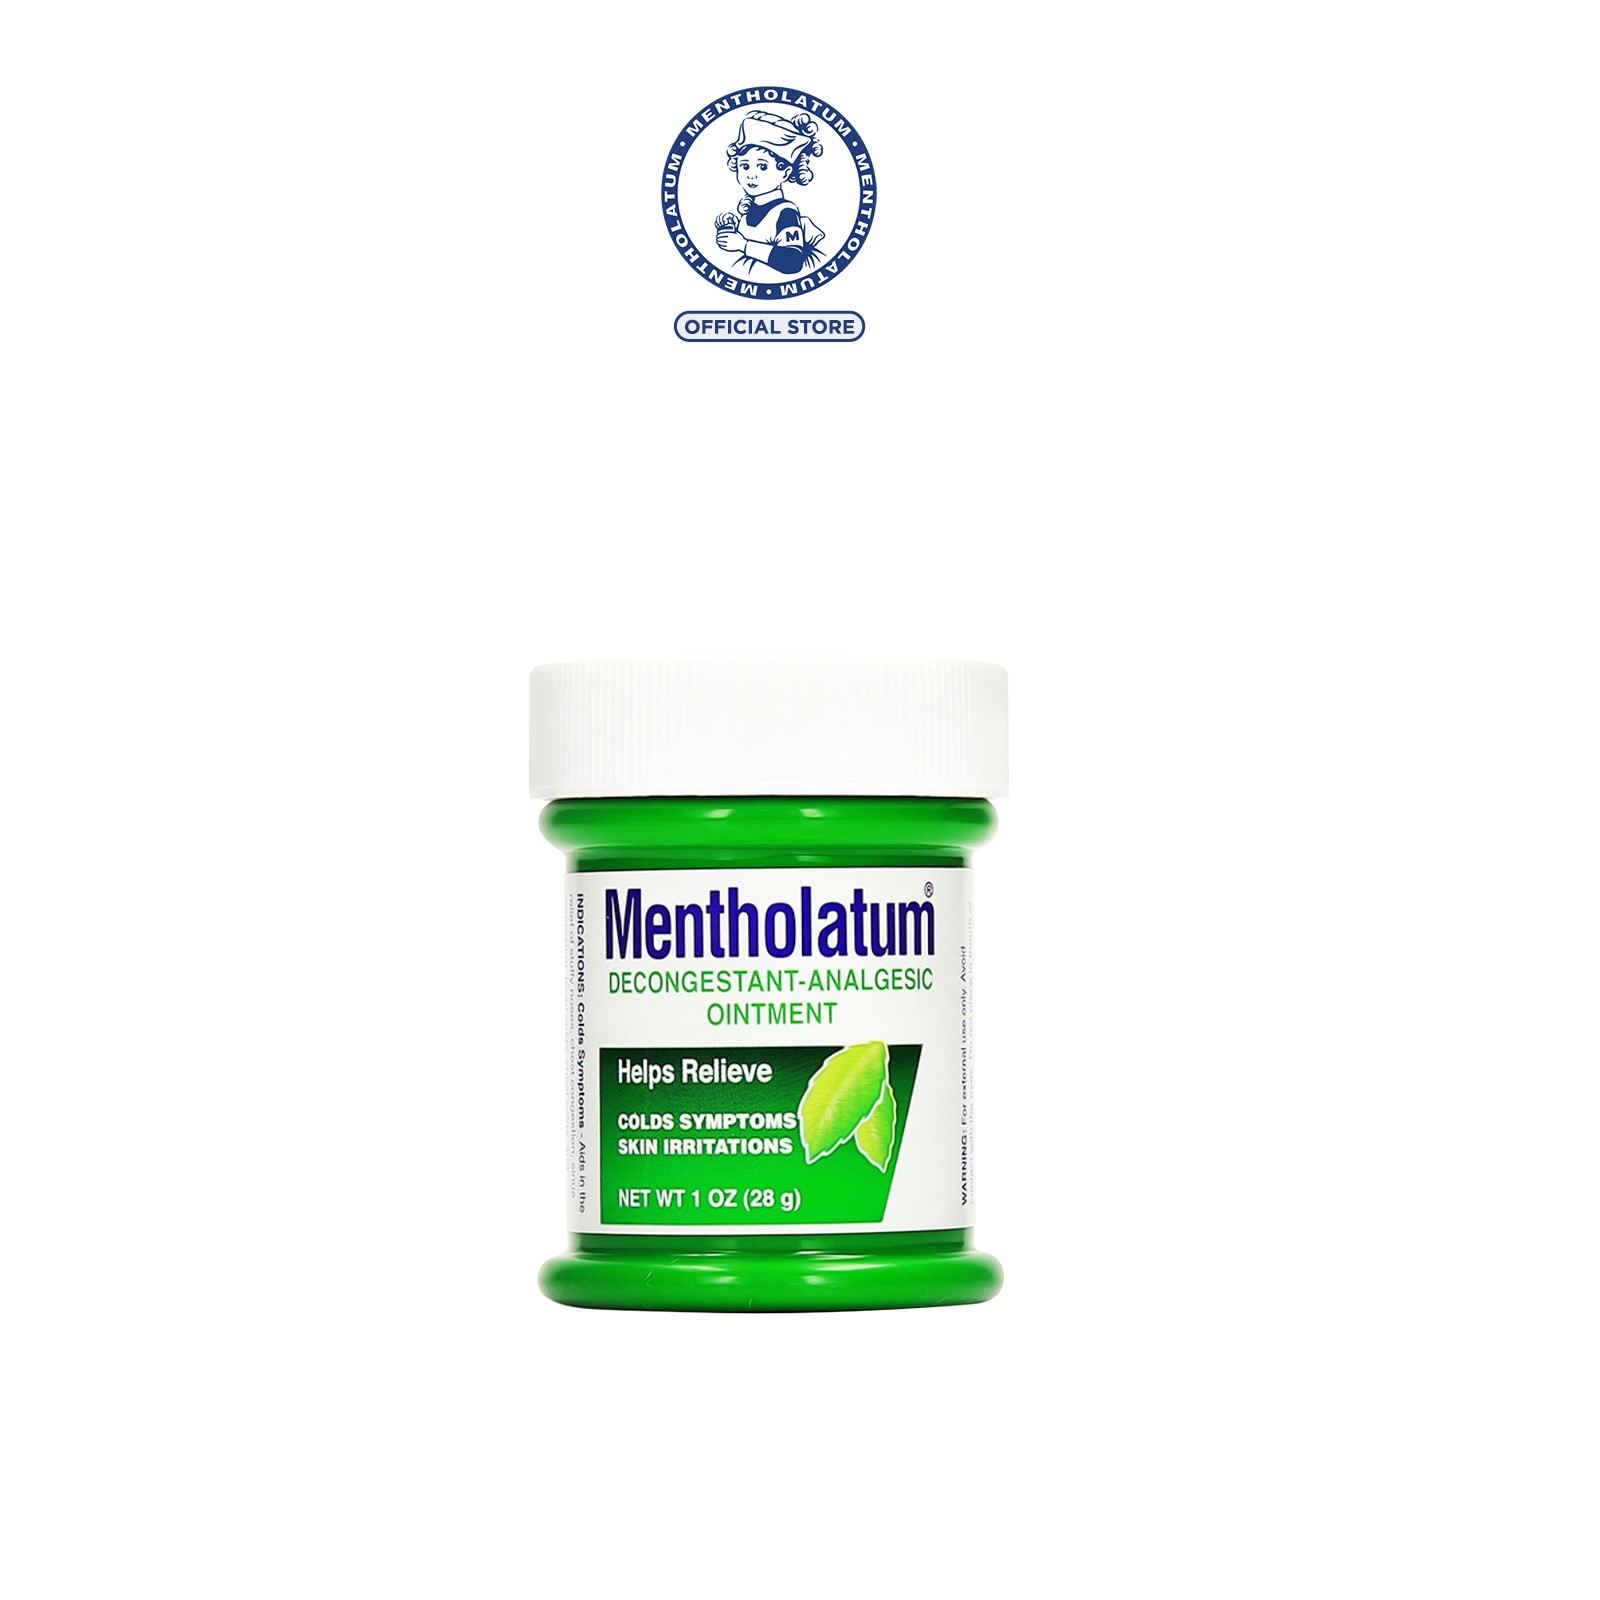 Mentholatum Decongestant Analgesic Ointment 28g | Lazada Singapore